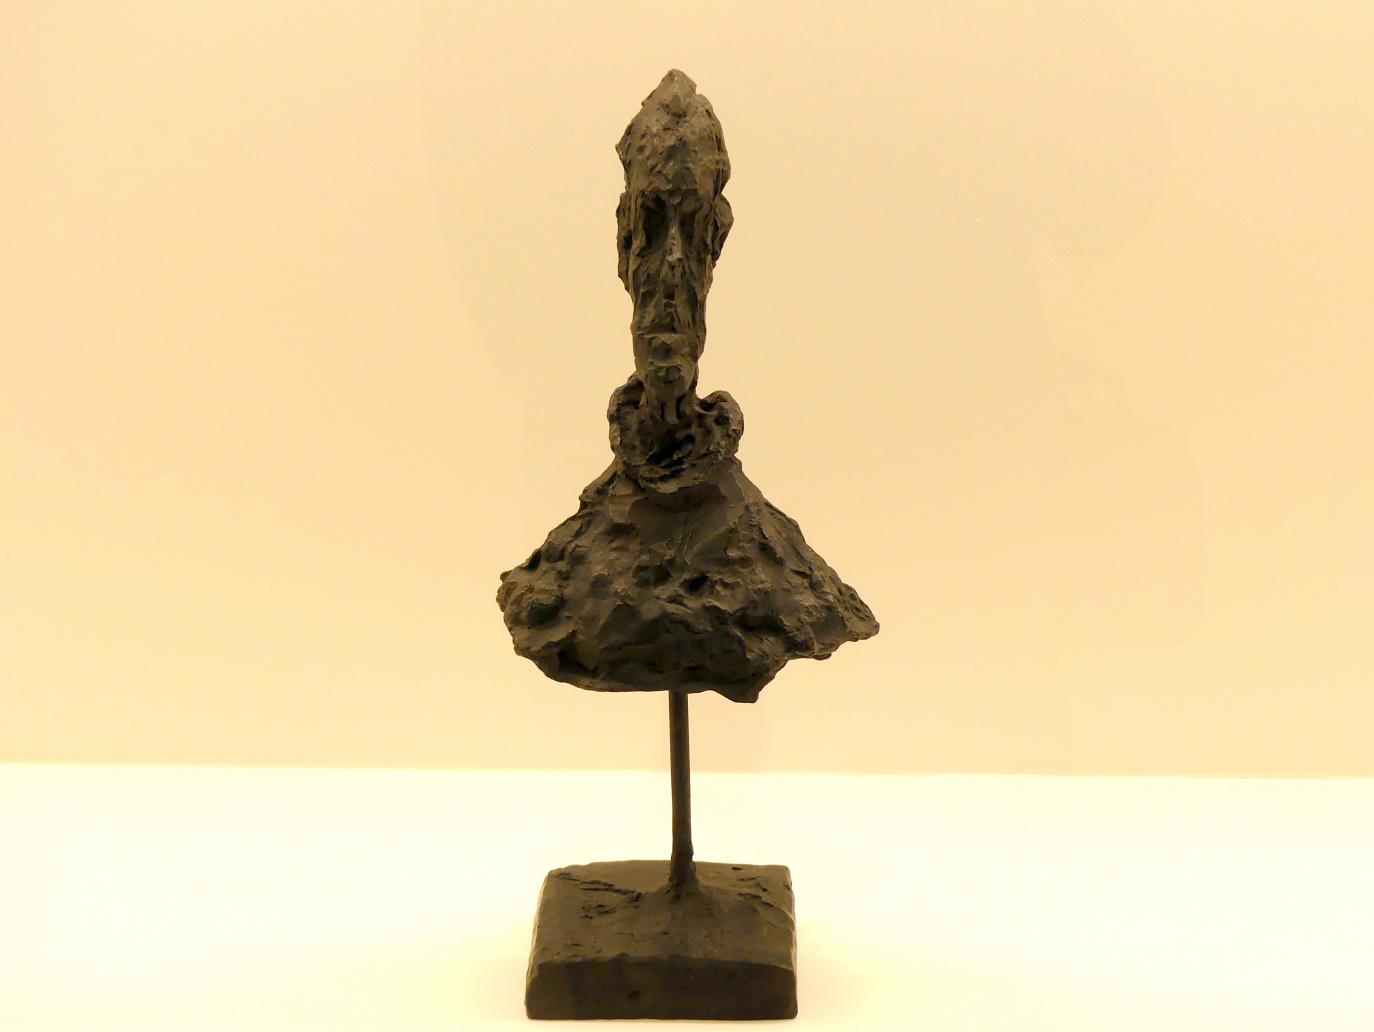 Alberto Giacometti (1914–1965), Büste eines Mannes auf einem Stab, Prag, Nationalgalerie im Messepalast, Ausstellung "Alberto Giacometti" vom 18.07.-01.12.2019, Kleine Skulpturen, um 1954